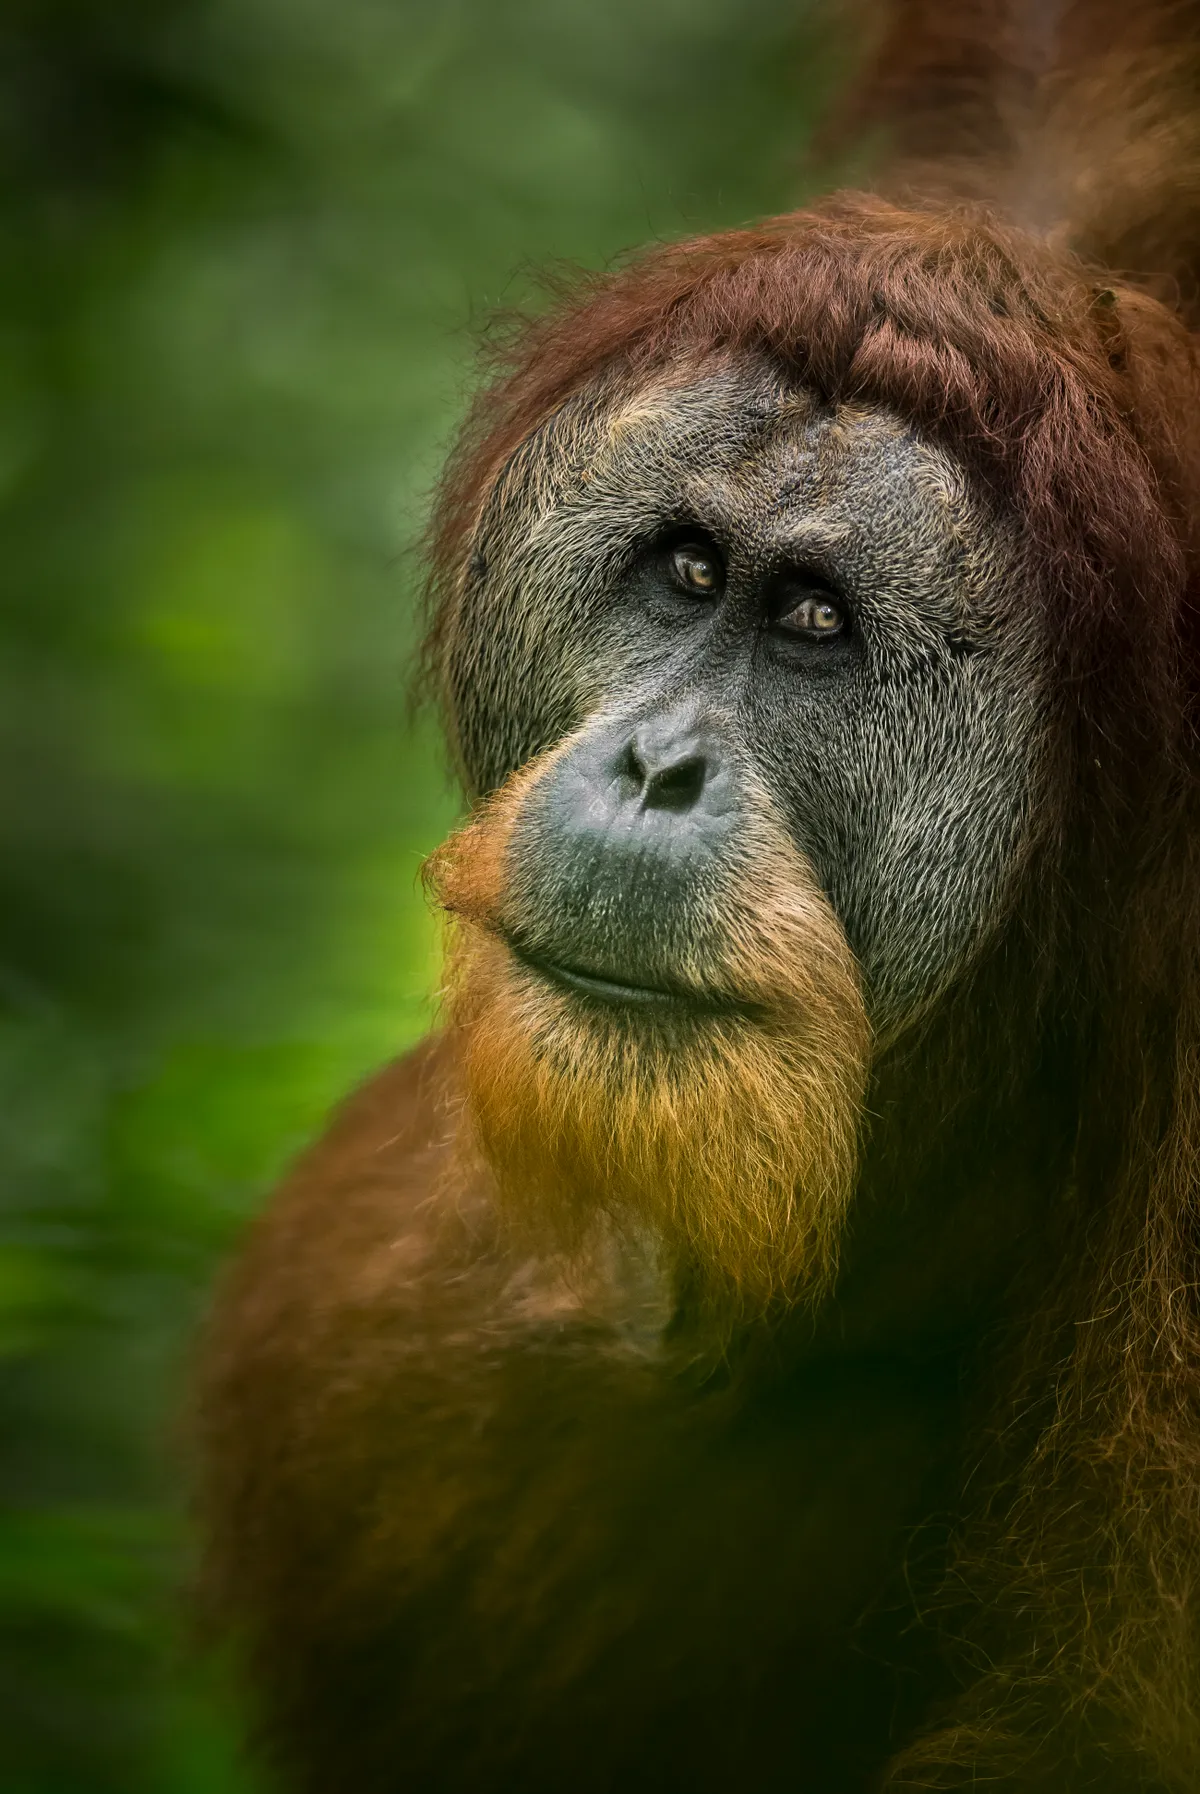 Sumatran orangutan in Sumatra. © Tom Way (UK)